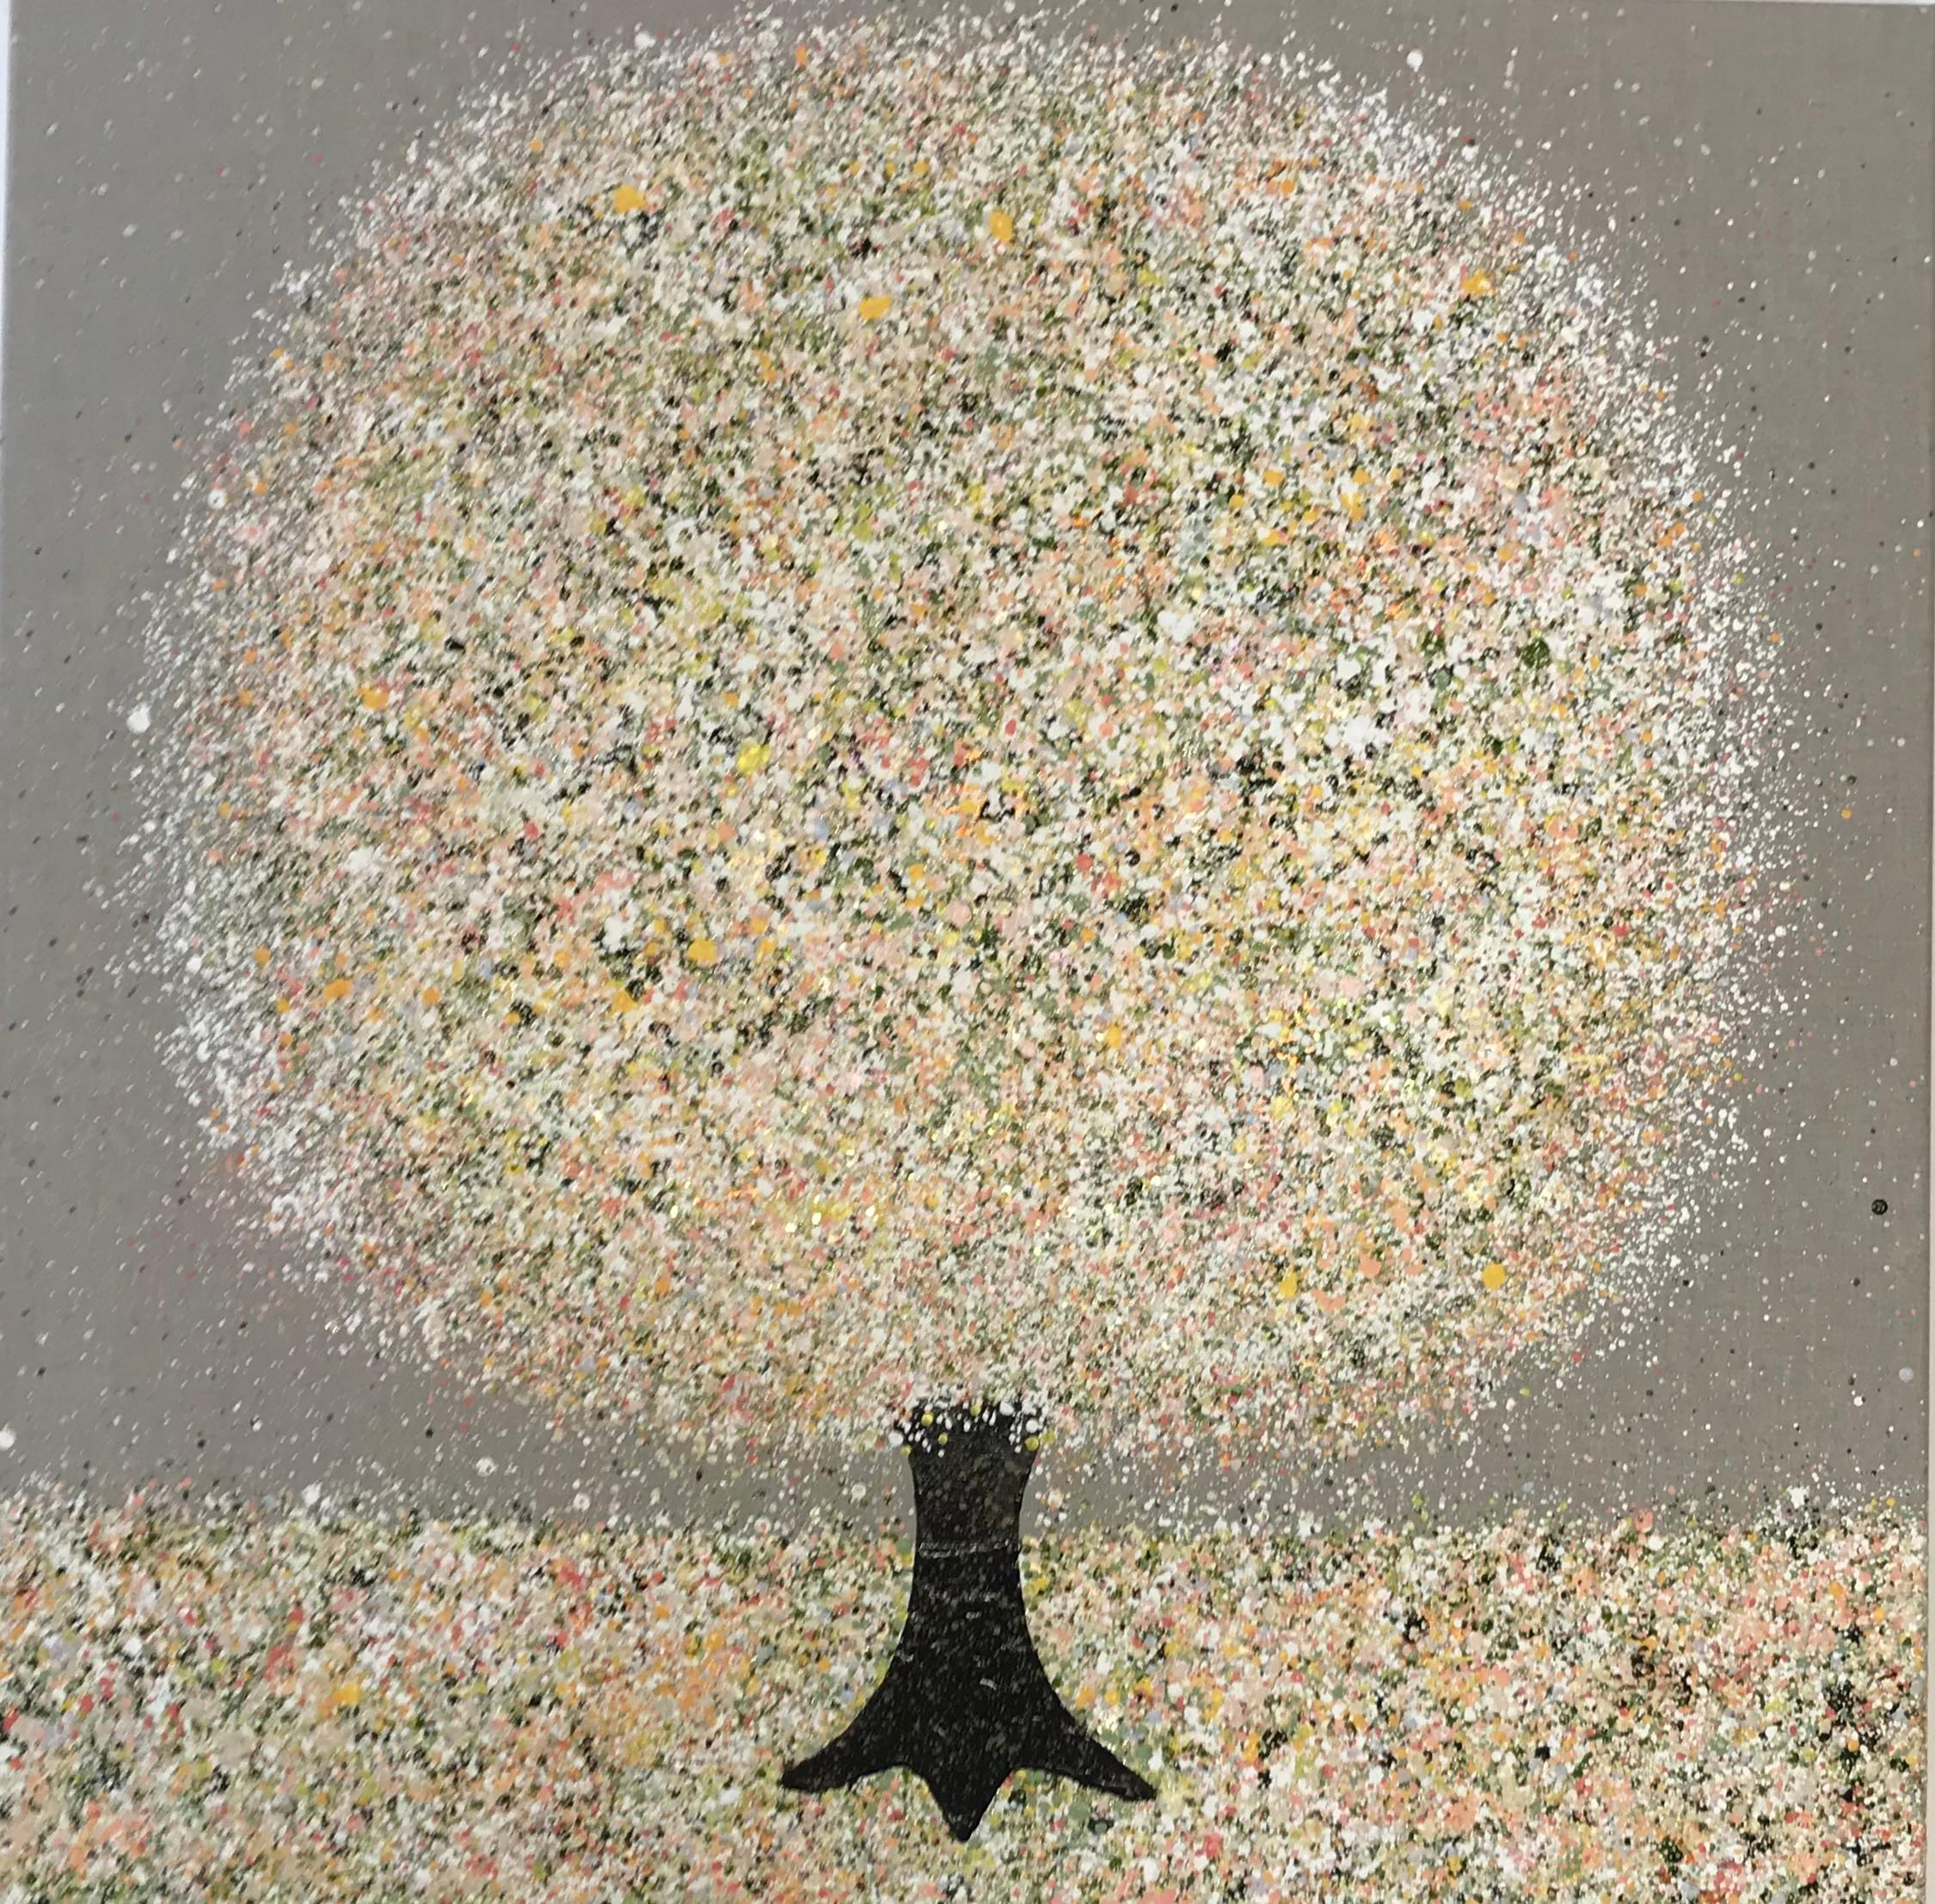 A Sparkling Apple Blossom Morning par Nicky Chubb [2022]
original et signé à la main par l'artiste 
Acrylique sur toile
Taille de l'image : H:80 cm x L:80 cm
Taille complète de l'œuvre non encadrée : H:80 cm x L:80 cm x P:3cm
Vendu sans